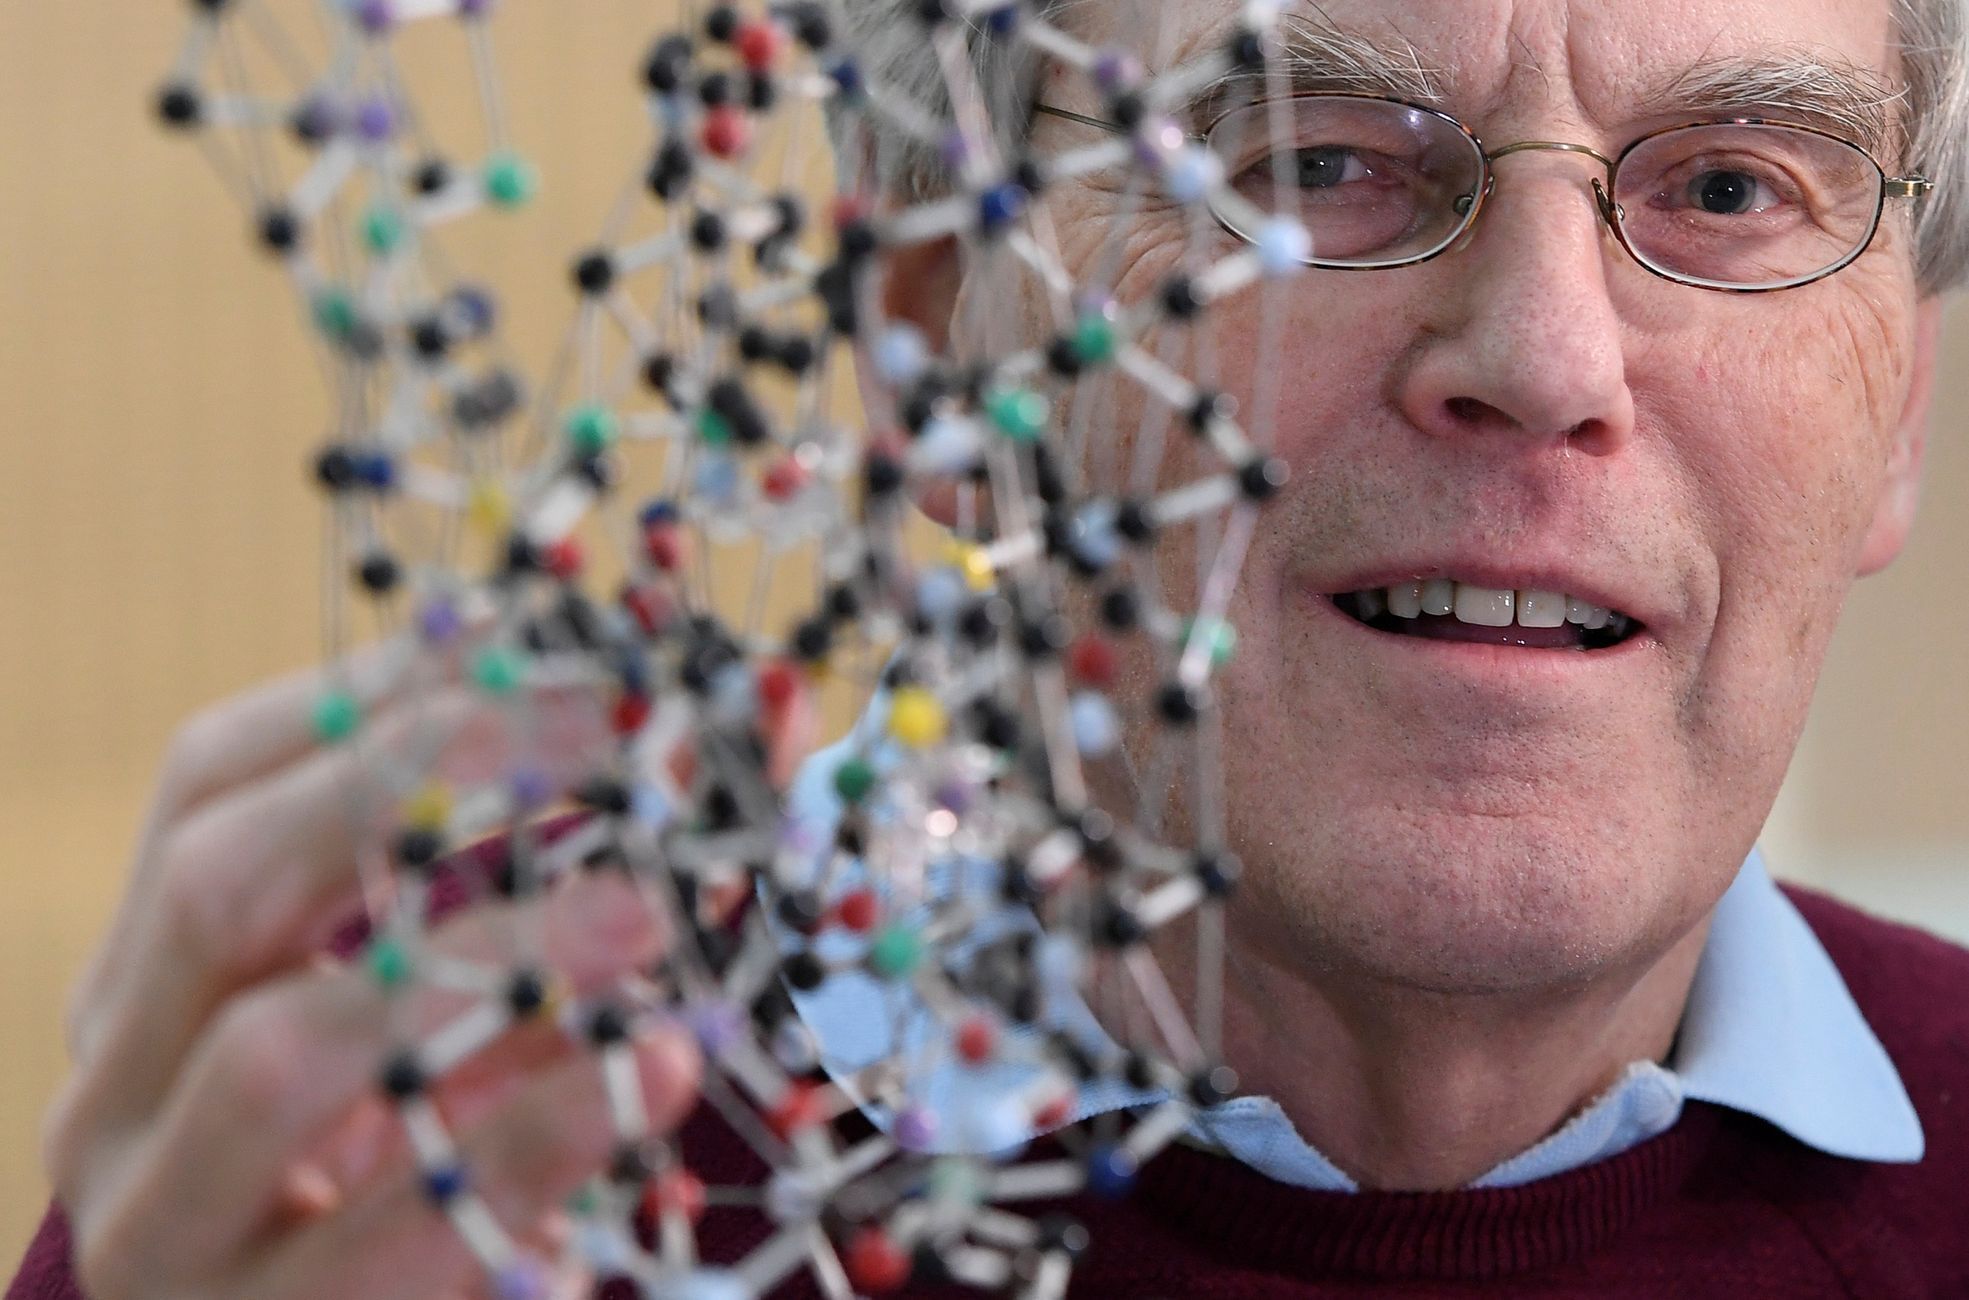 Nobelova cena za chemii 2017 - Richard Henderson